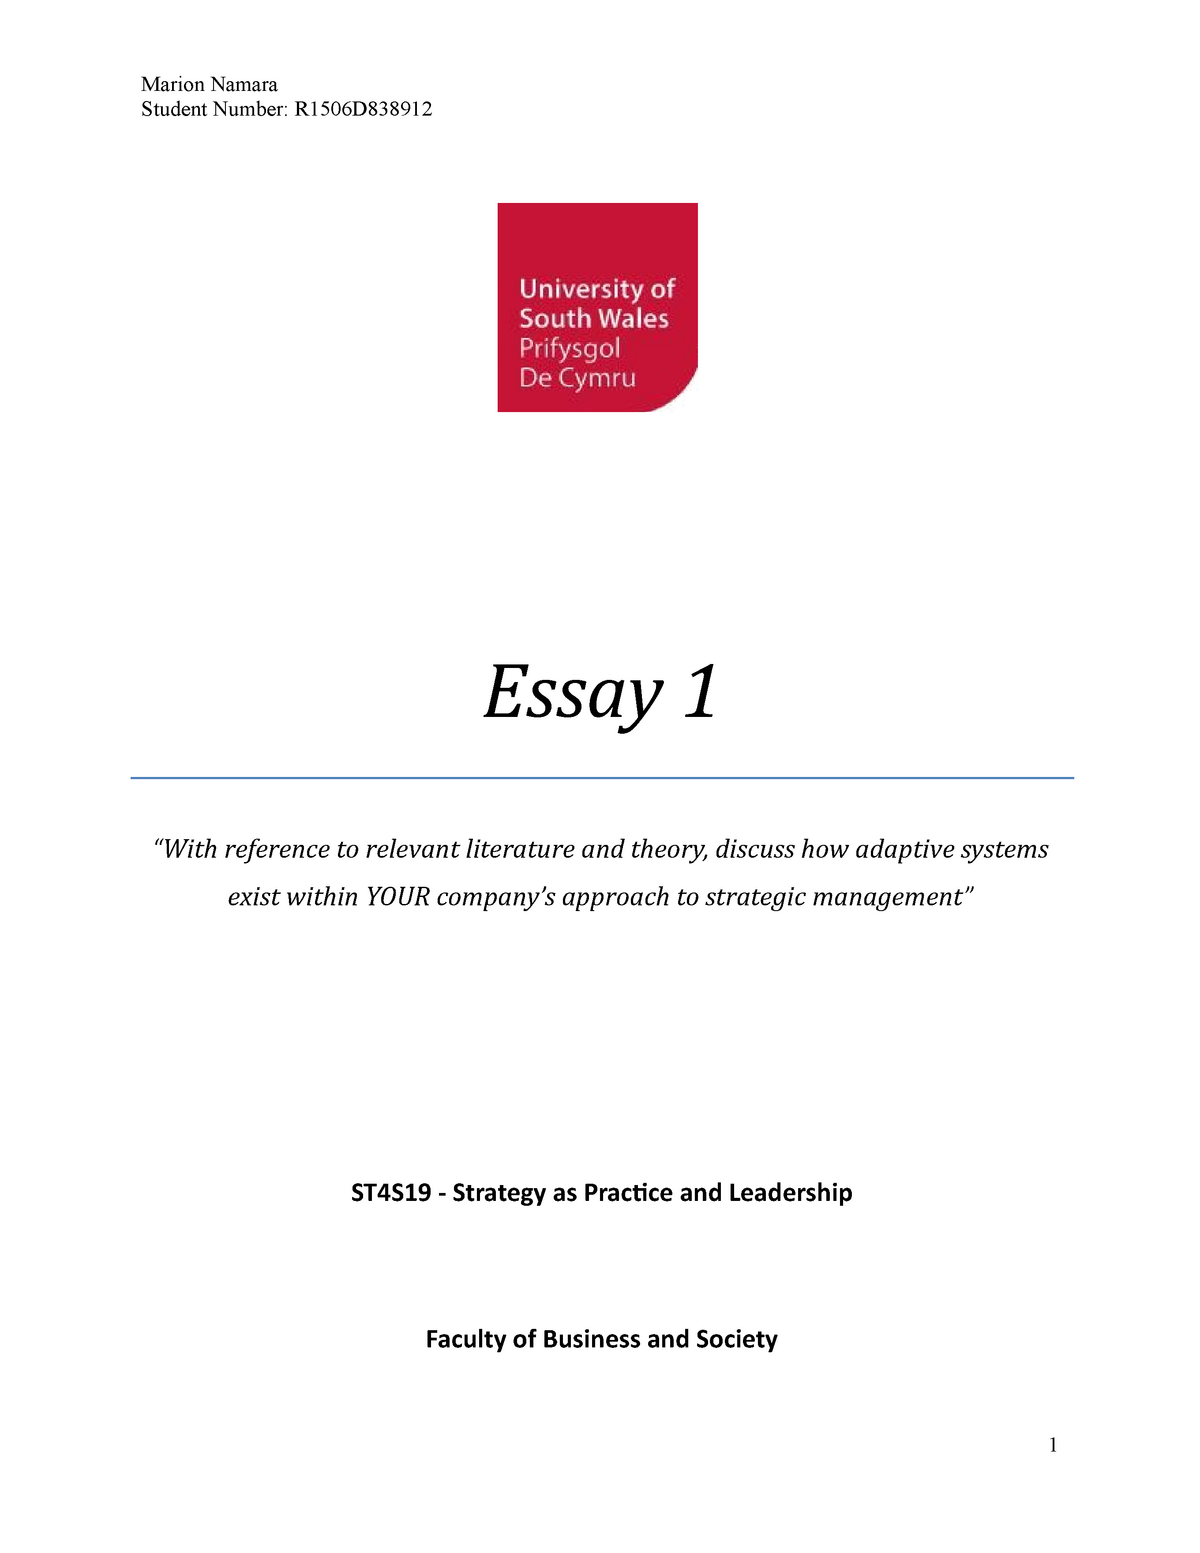 strategic management essay topics